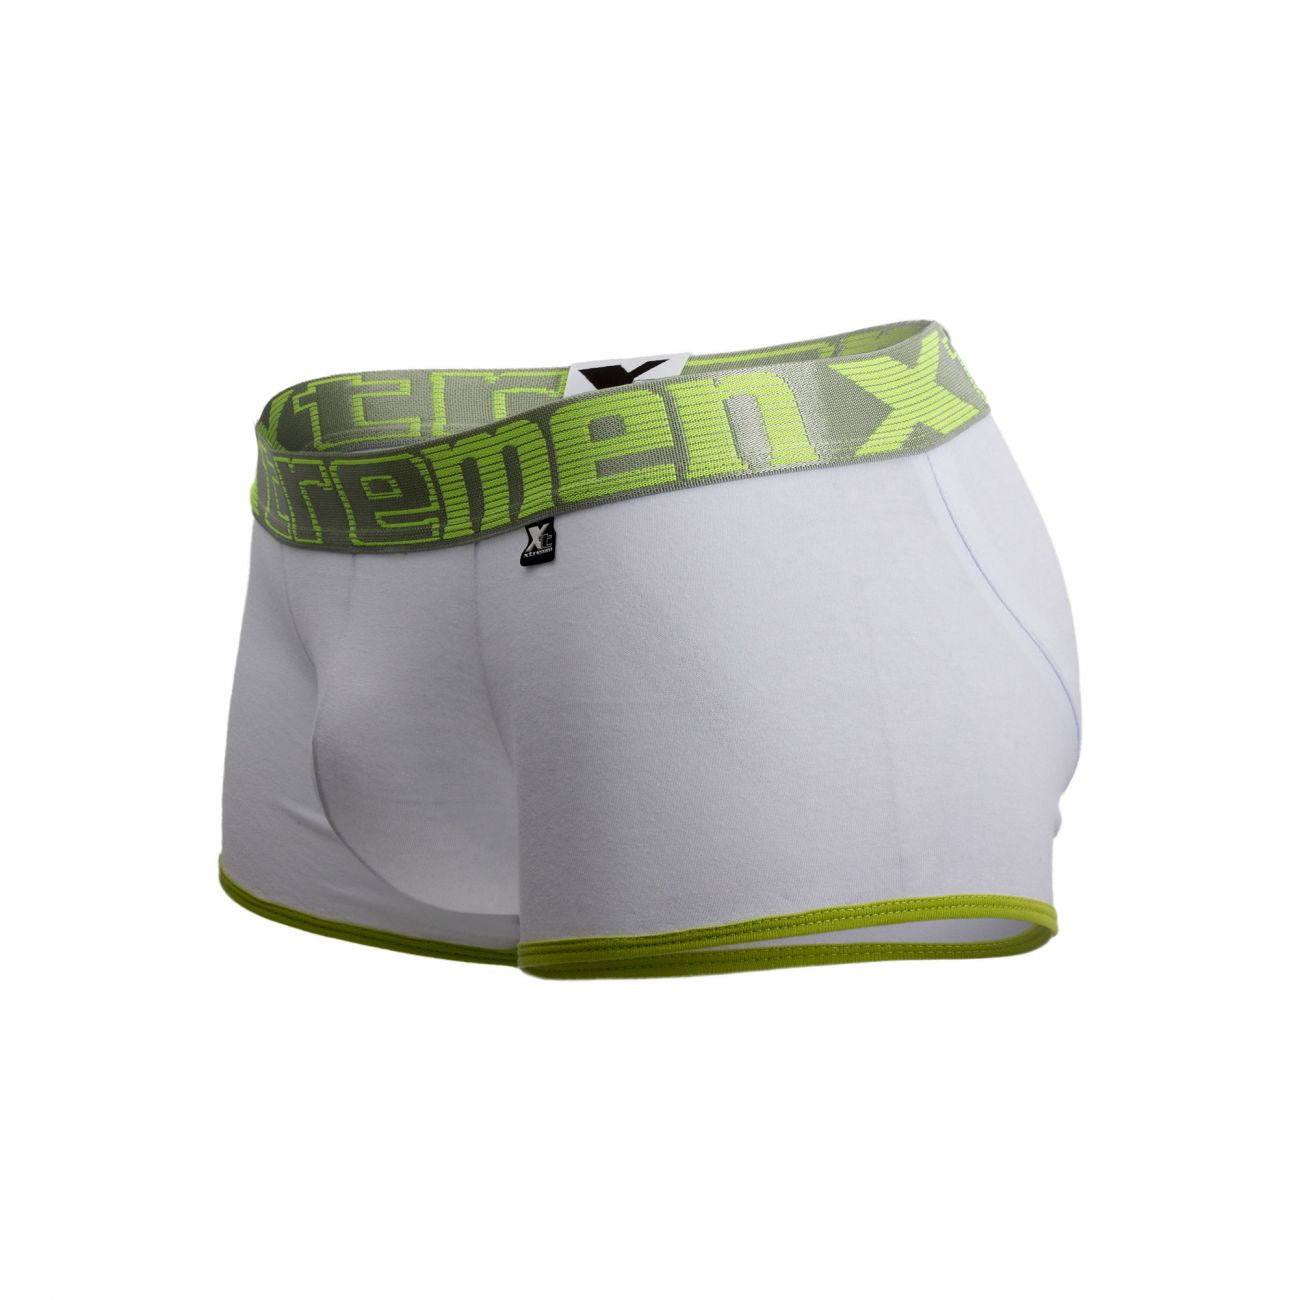 Xtremen 91027 Butt lifter Boxer Briefs